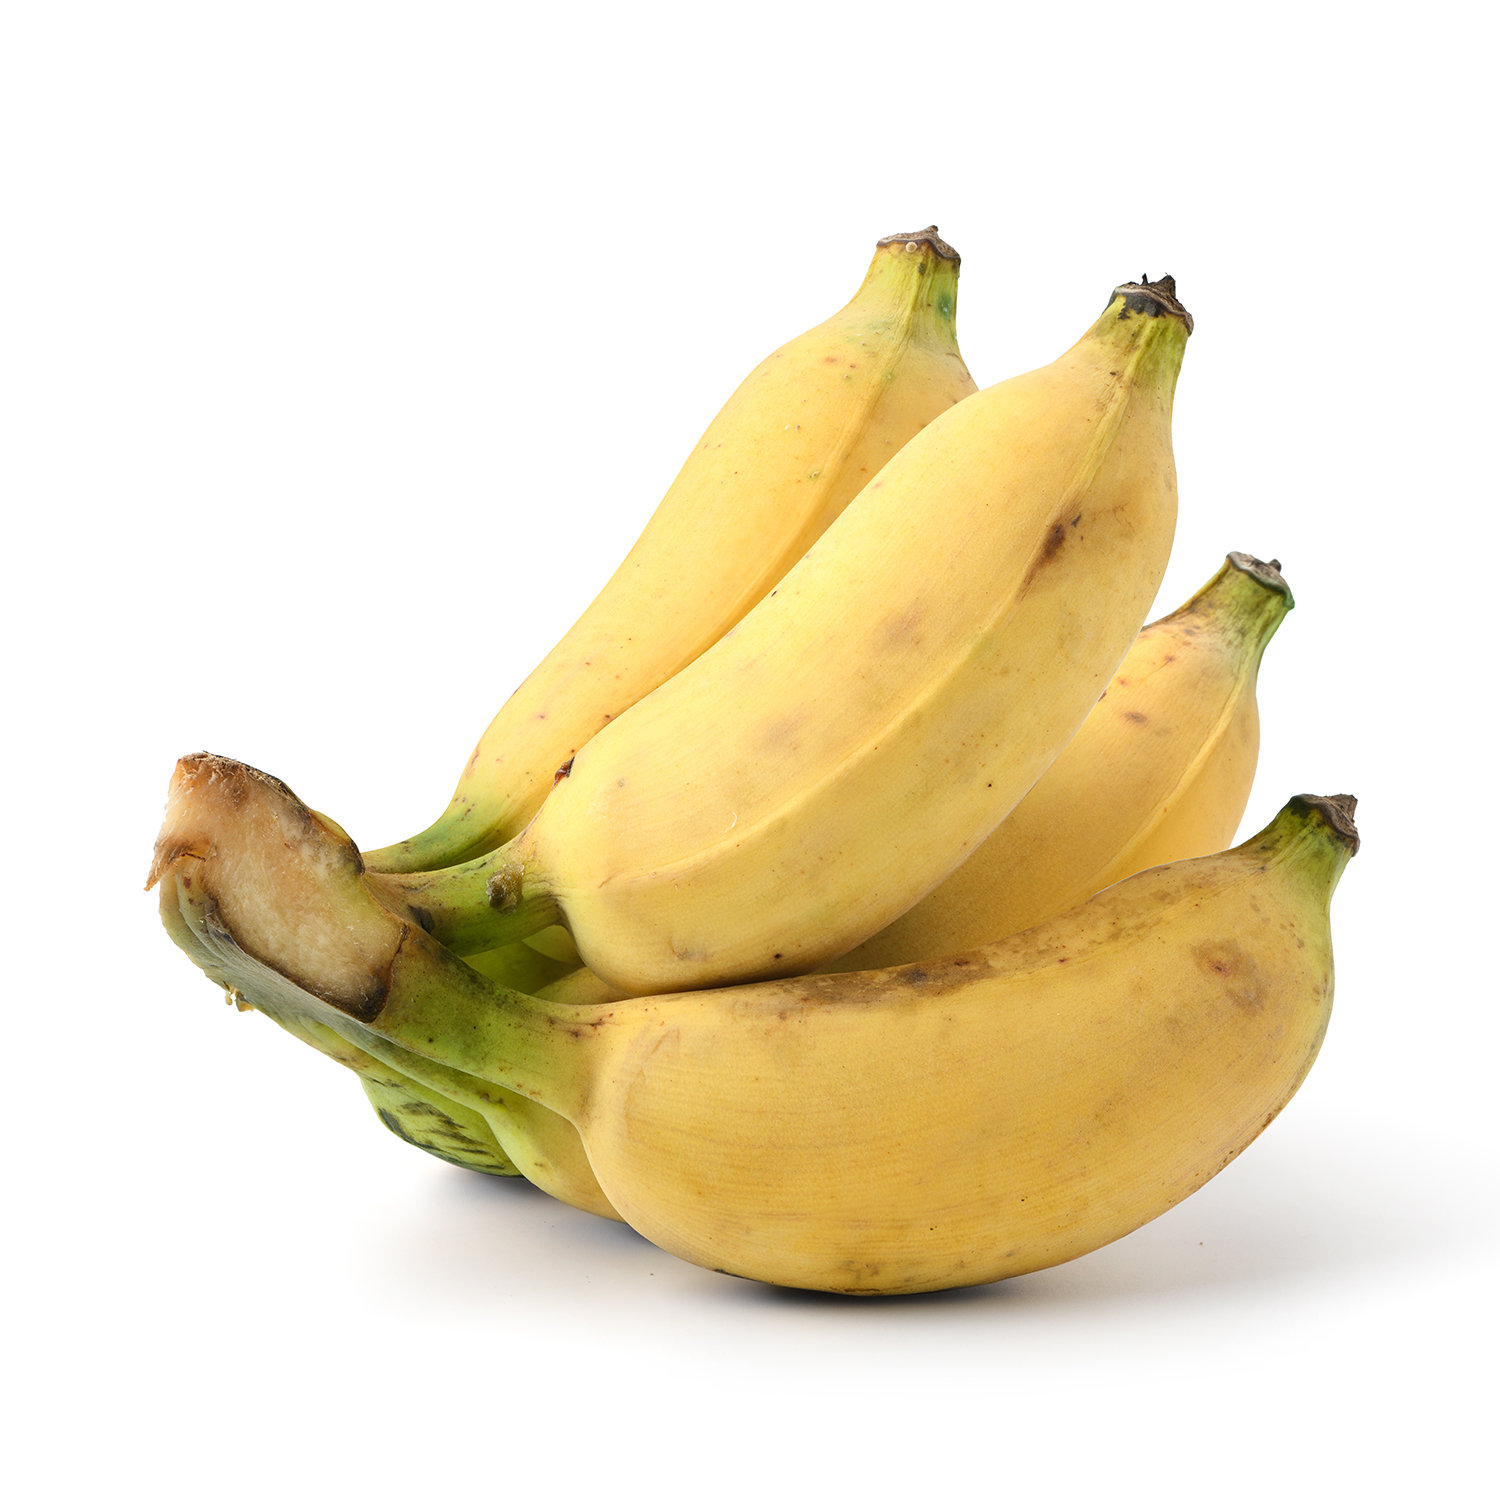 Thai banana